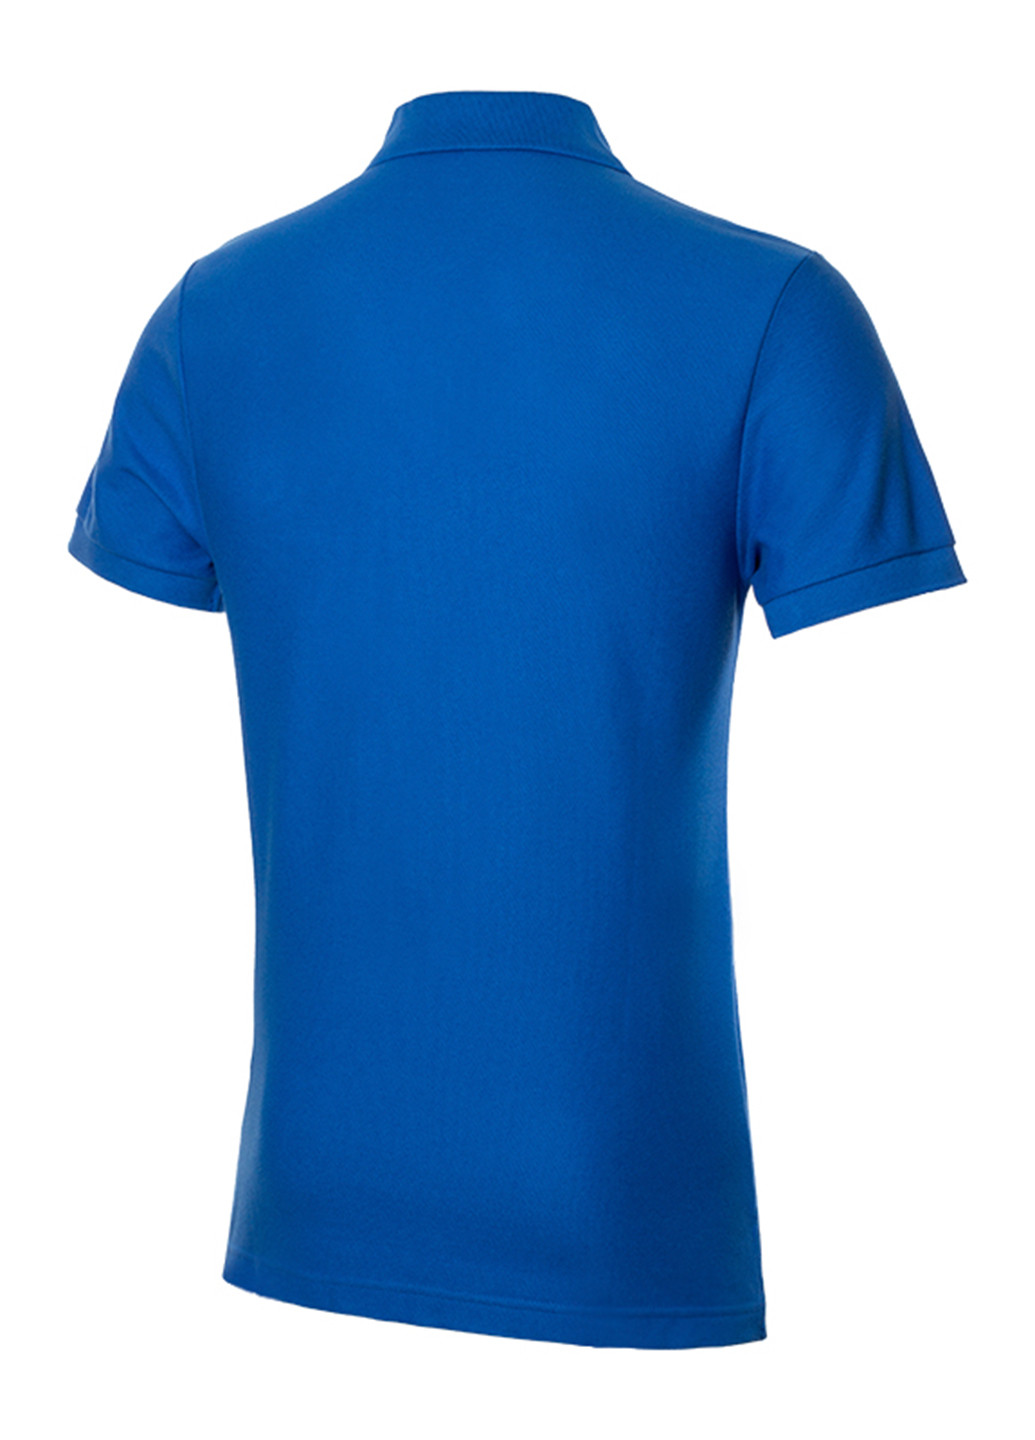 Голубой футболка-поло для мужчин Nike с логотипом